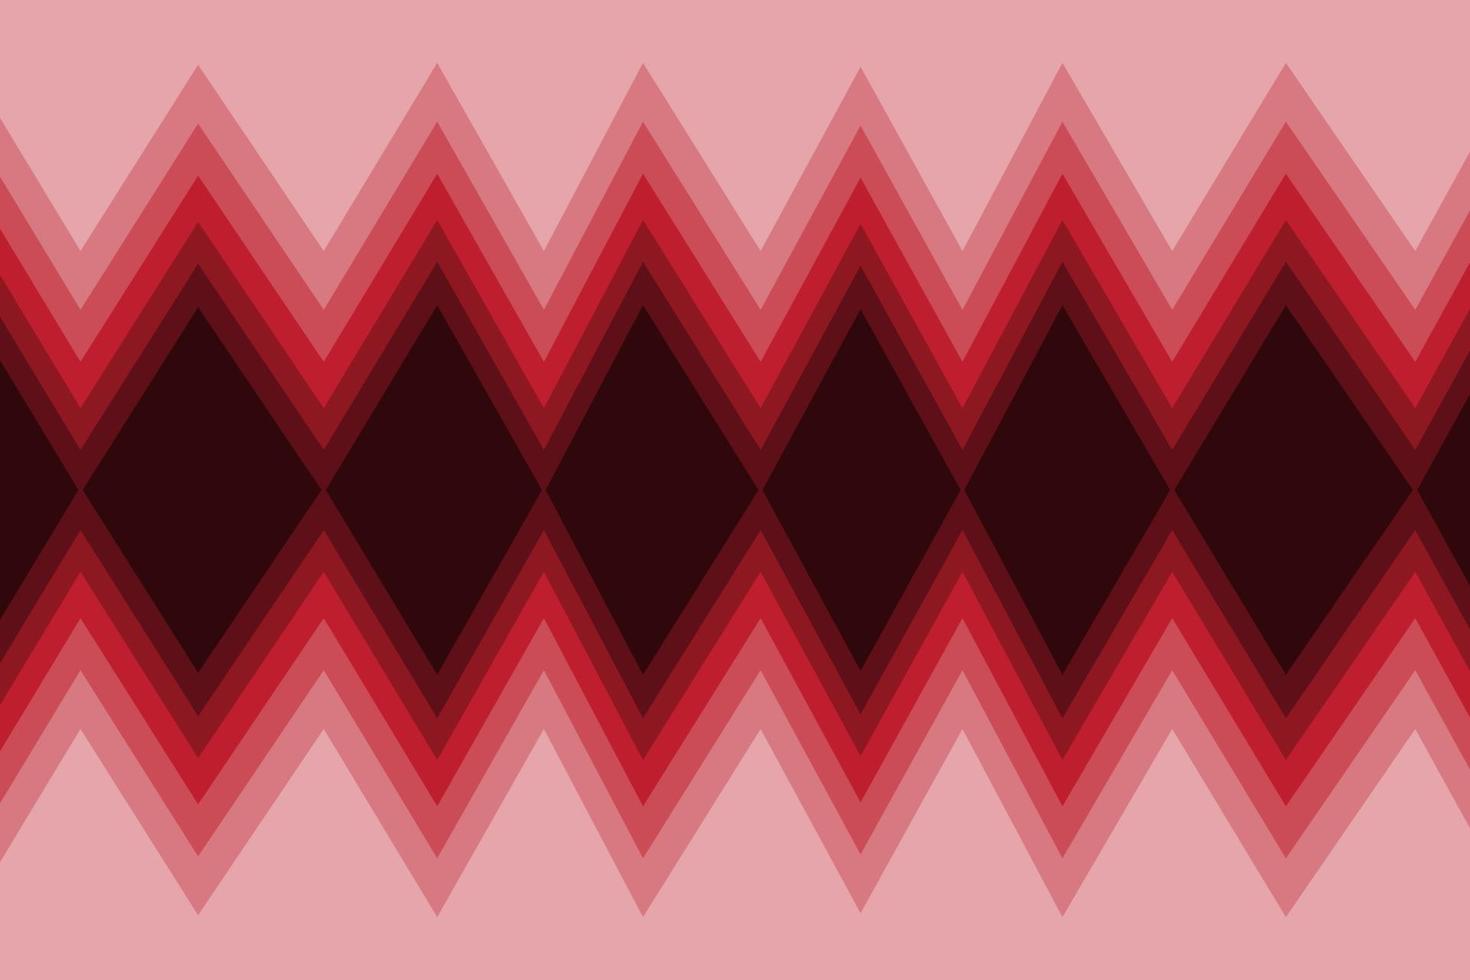 fondo abstracto con color degradado rojo vector